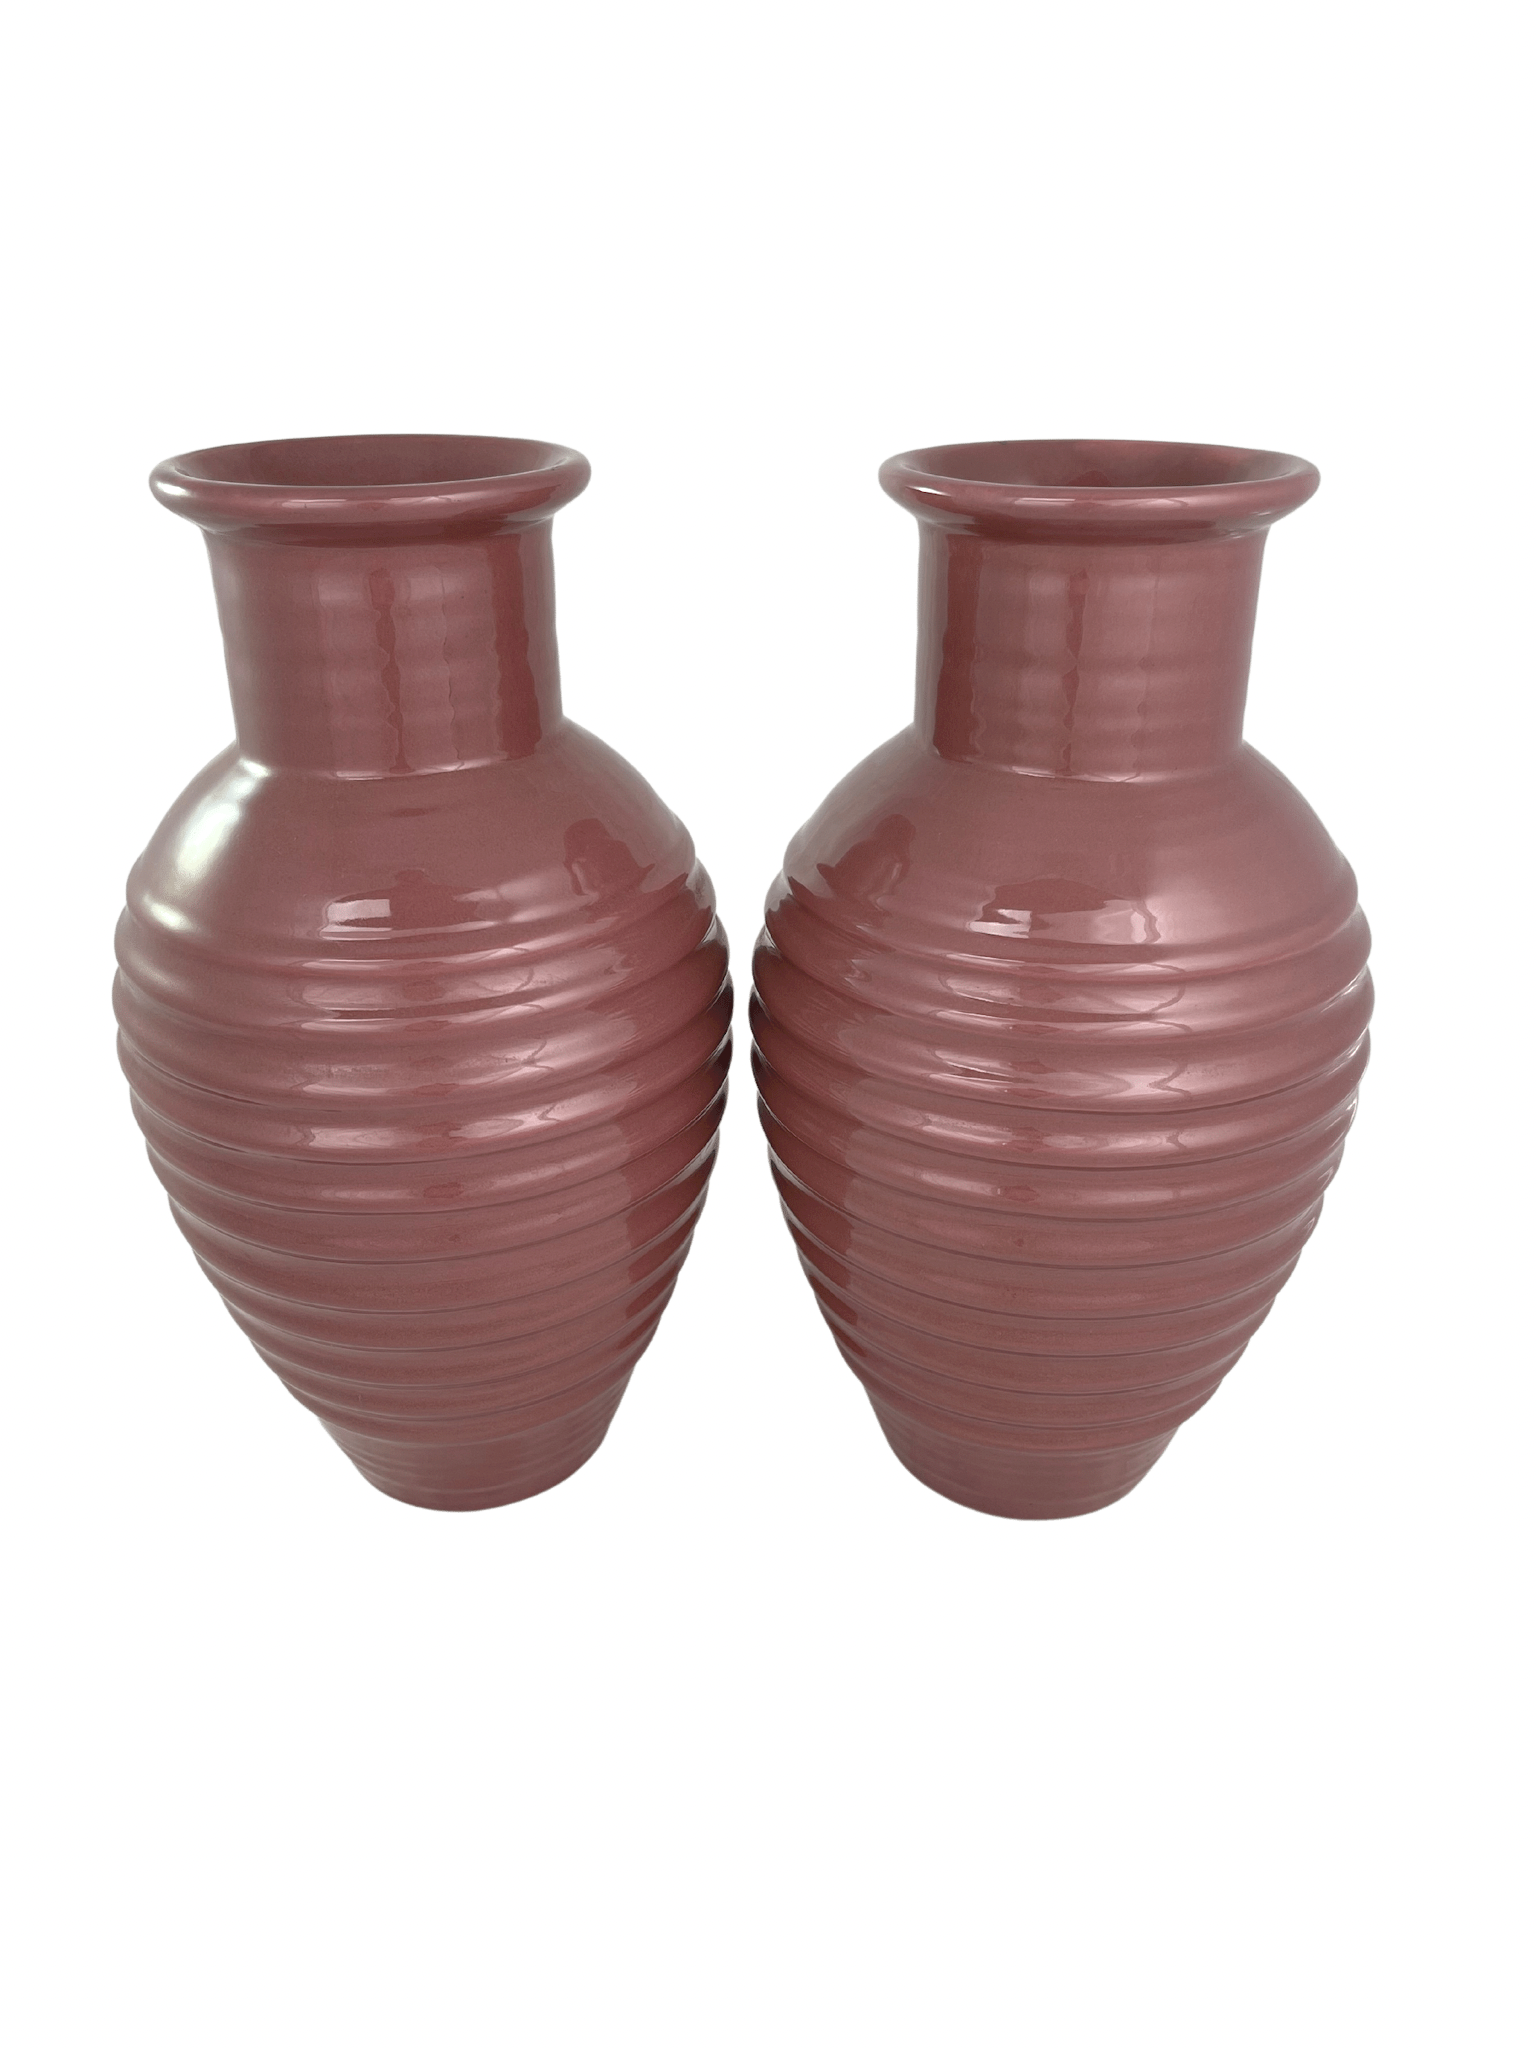 80s Modern Haeger Pottery Vases, Pr~P77646252